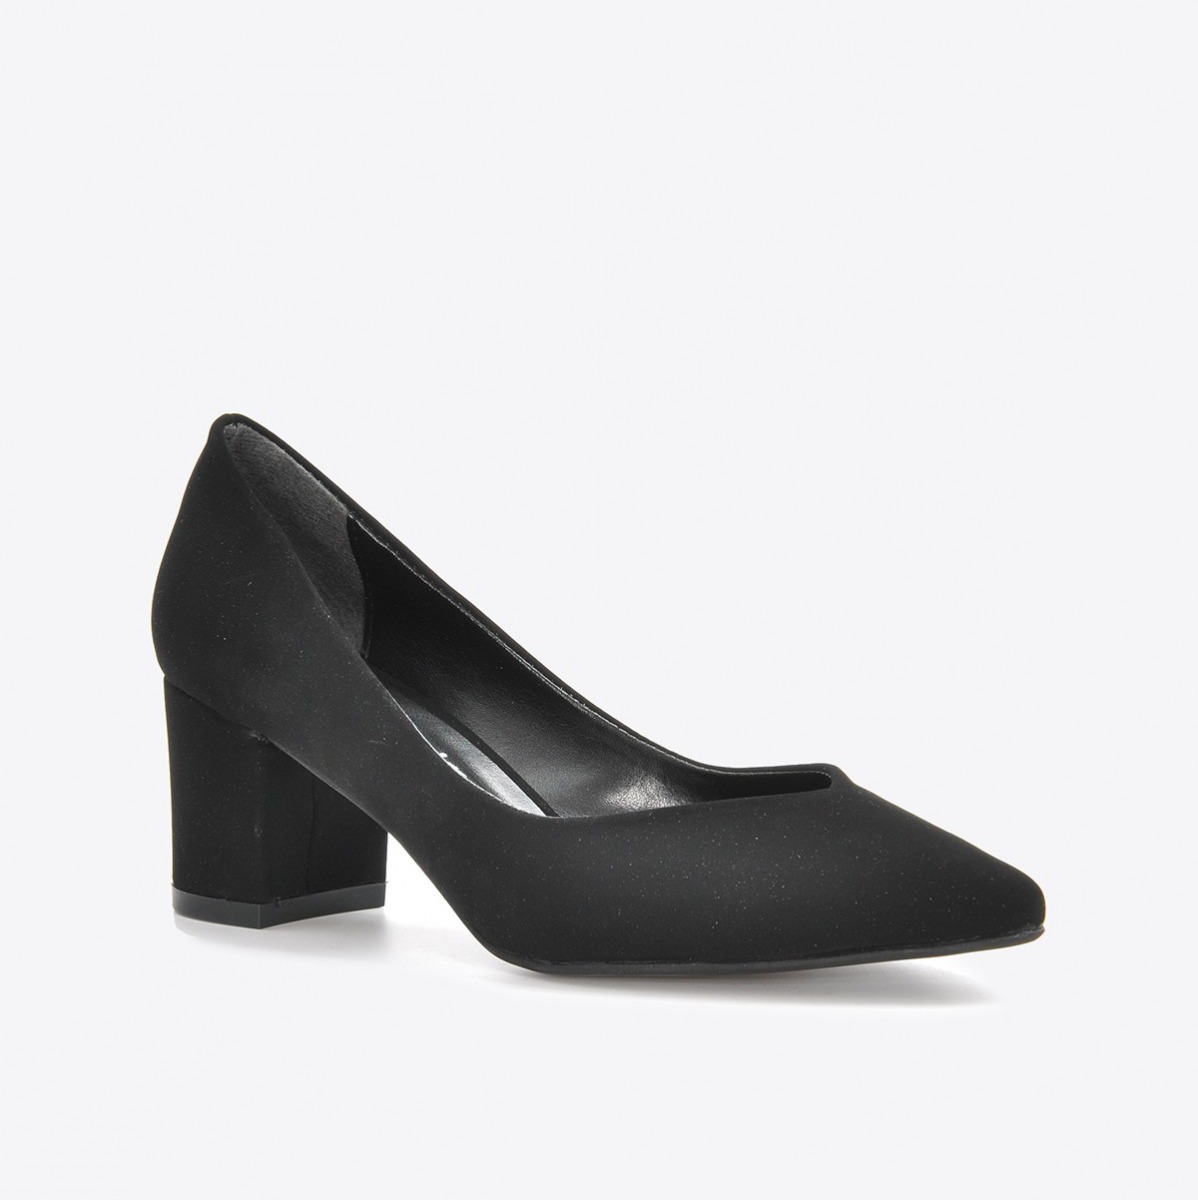 Flo Kadın Siyah Nubuk Klasik Topuklu Ayakkabı VZN21-041Y. 1